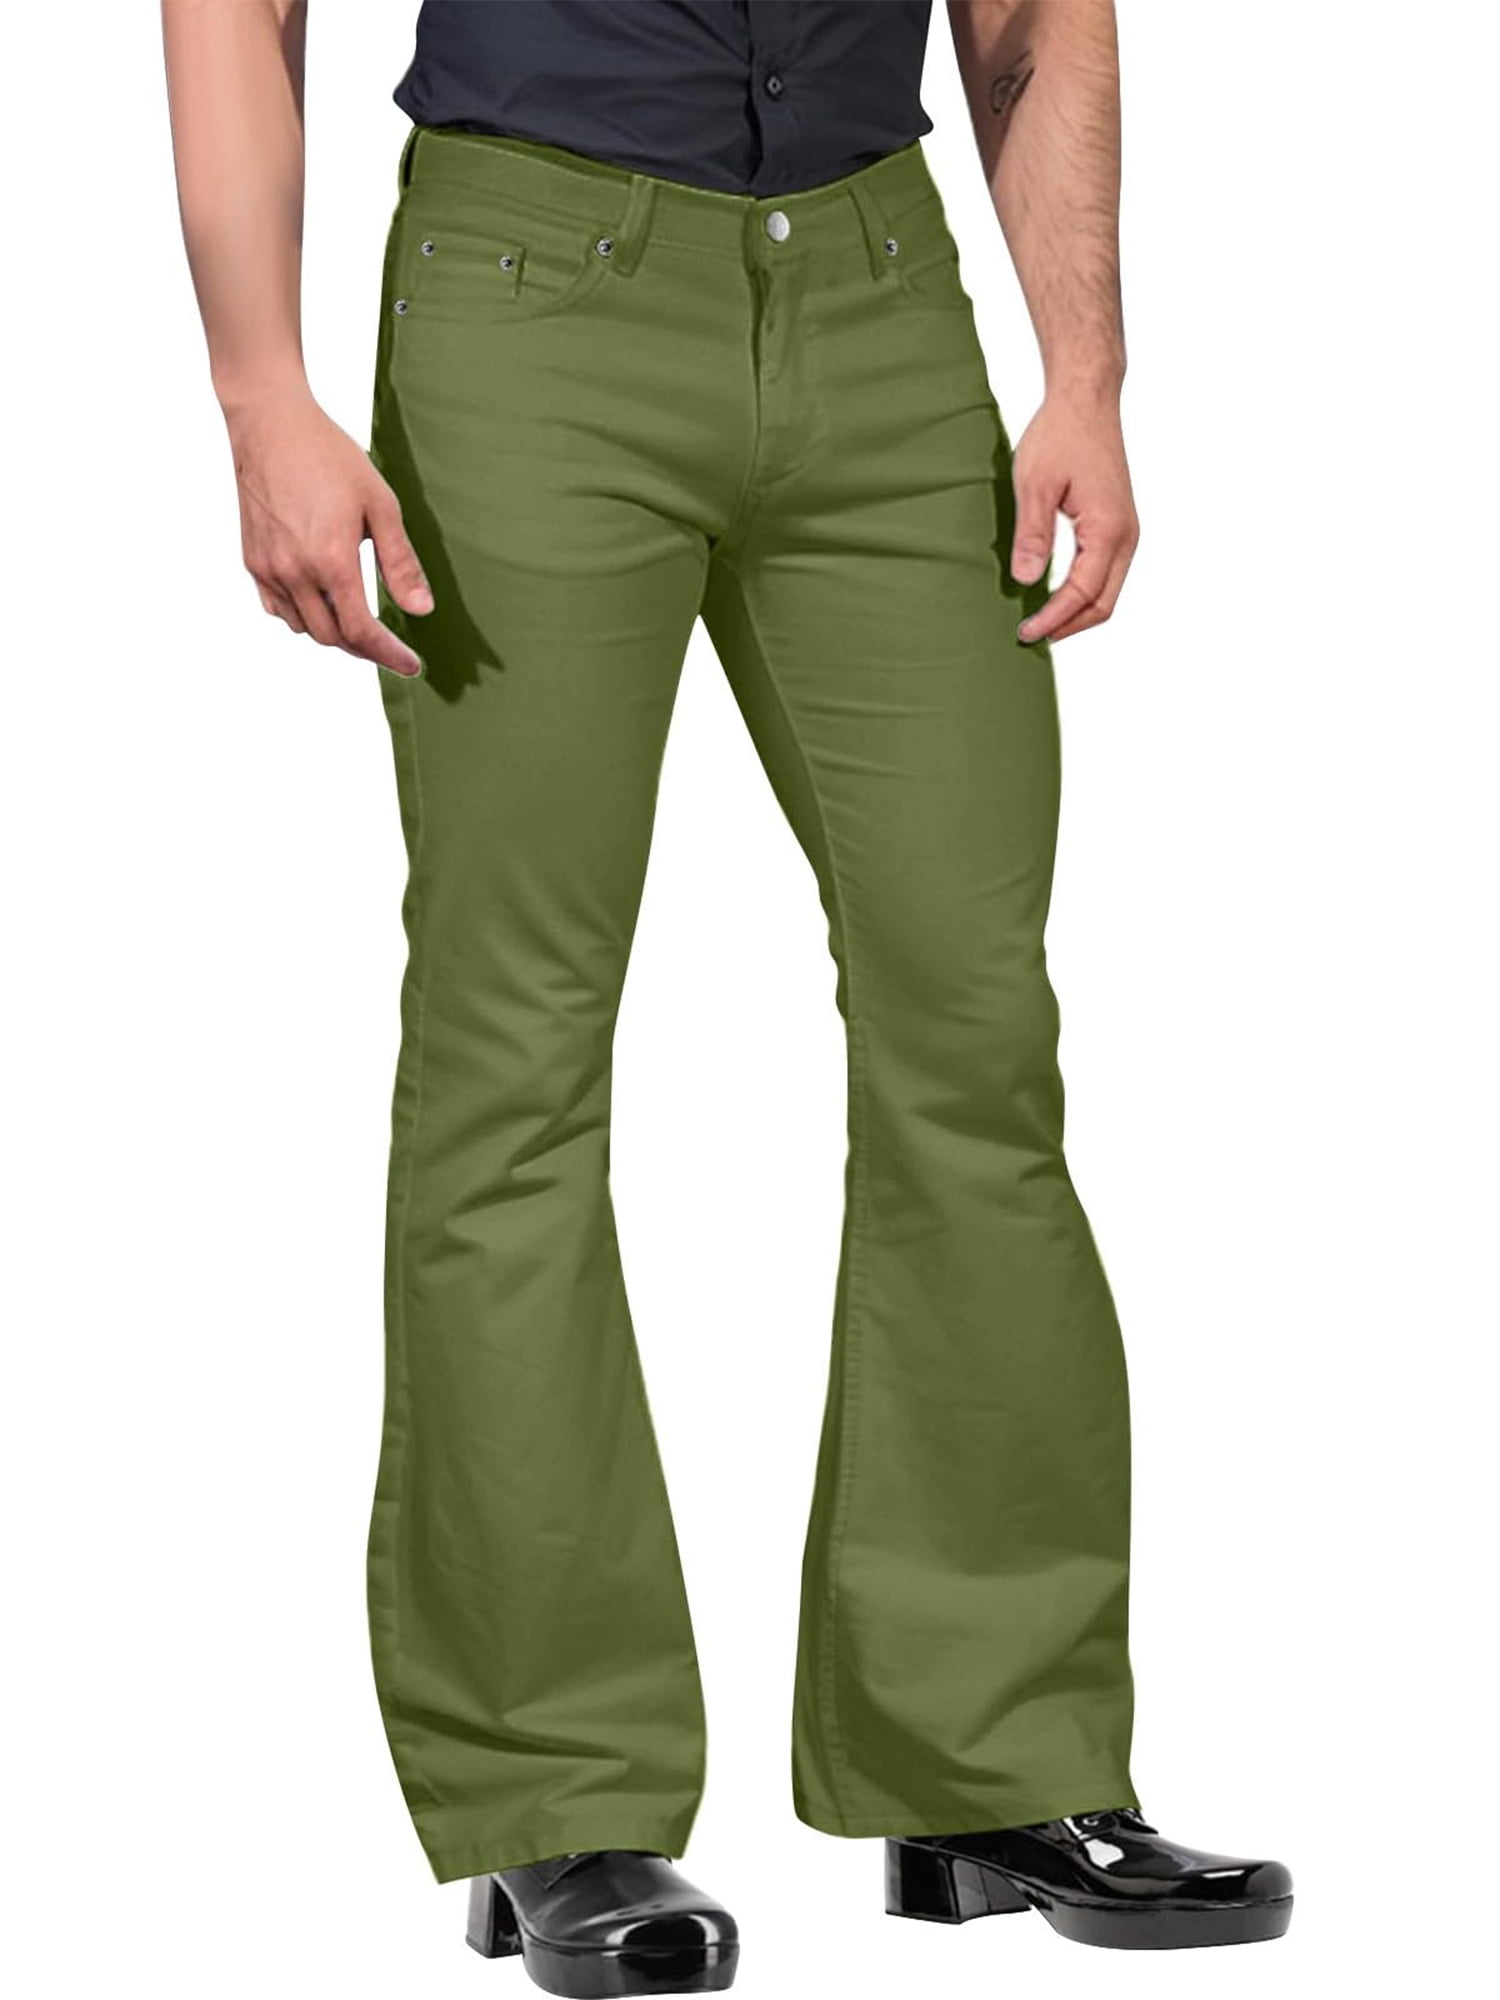 Tsseiatte Men's Retro Flare Pants, Solid Color Mid-Rise Trousers